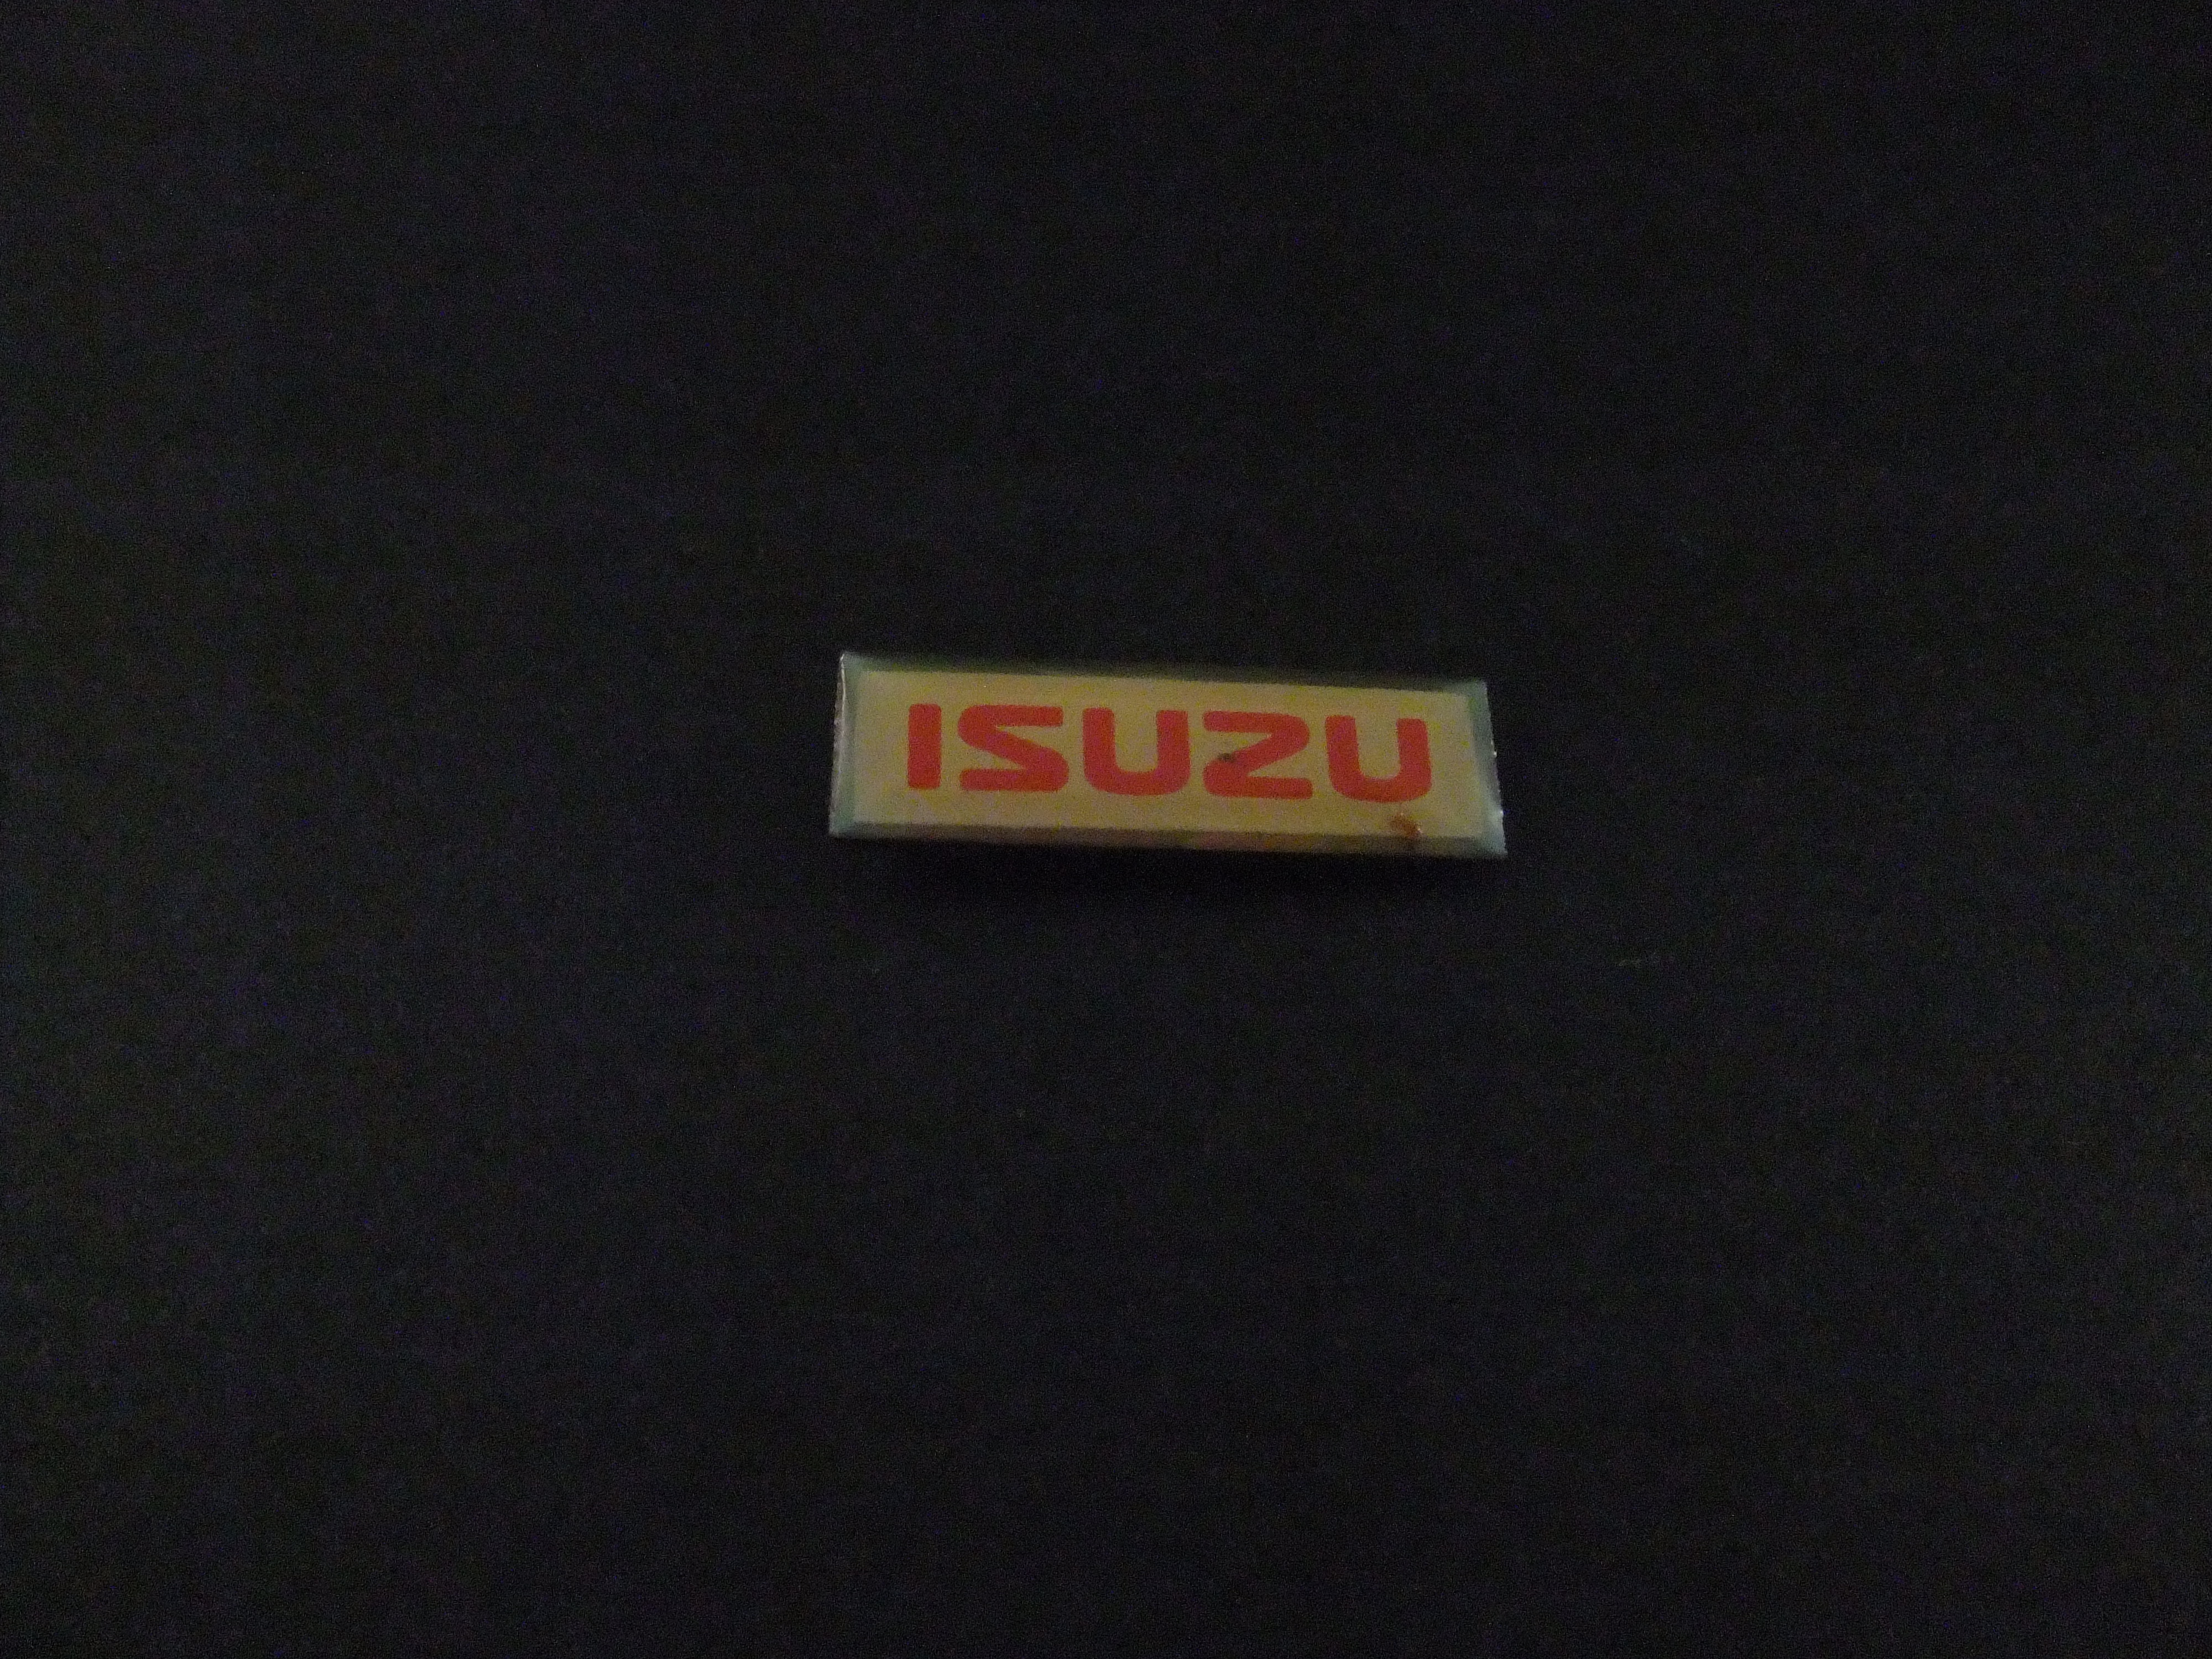 Isuzu Japans automerk logo ( smal)